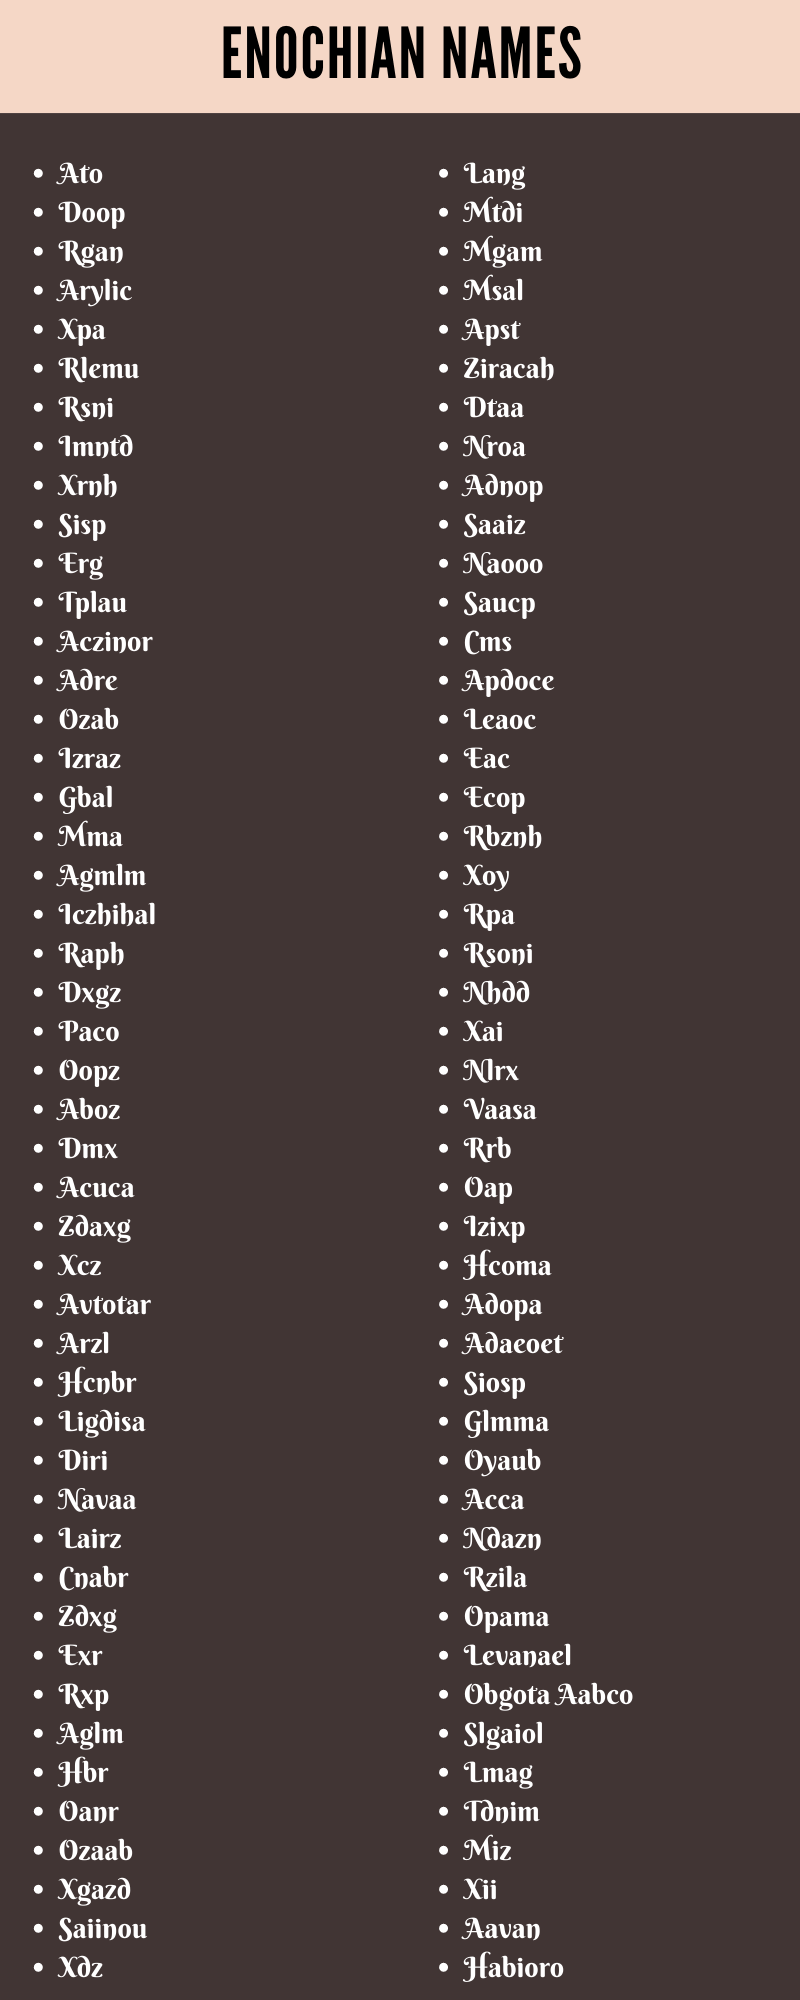 Enochian Names